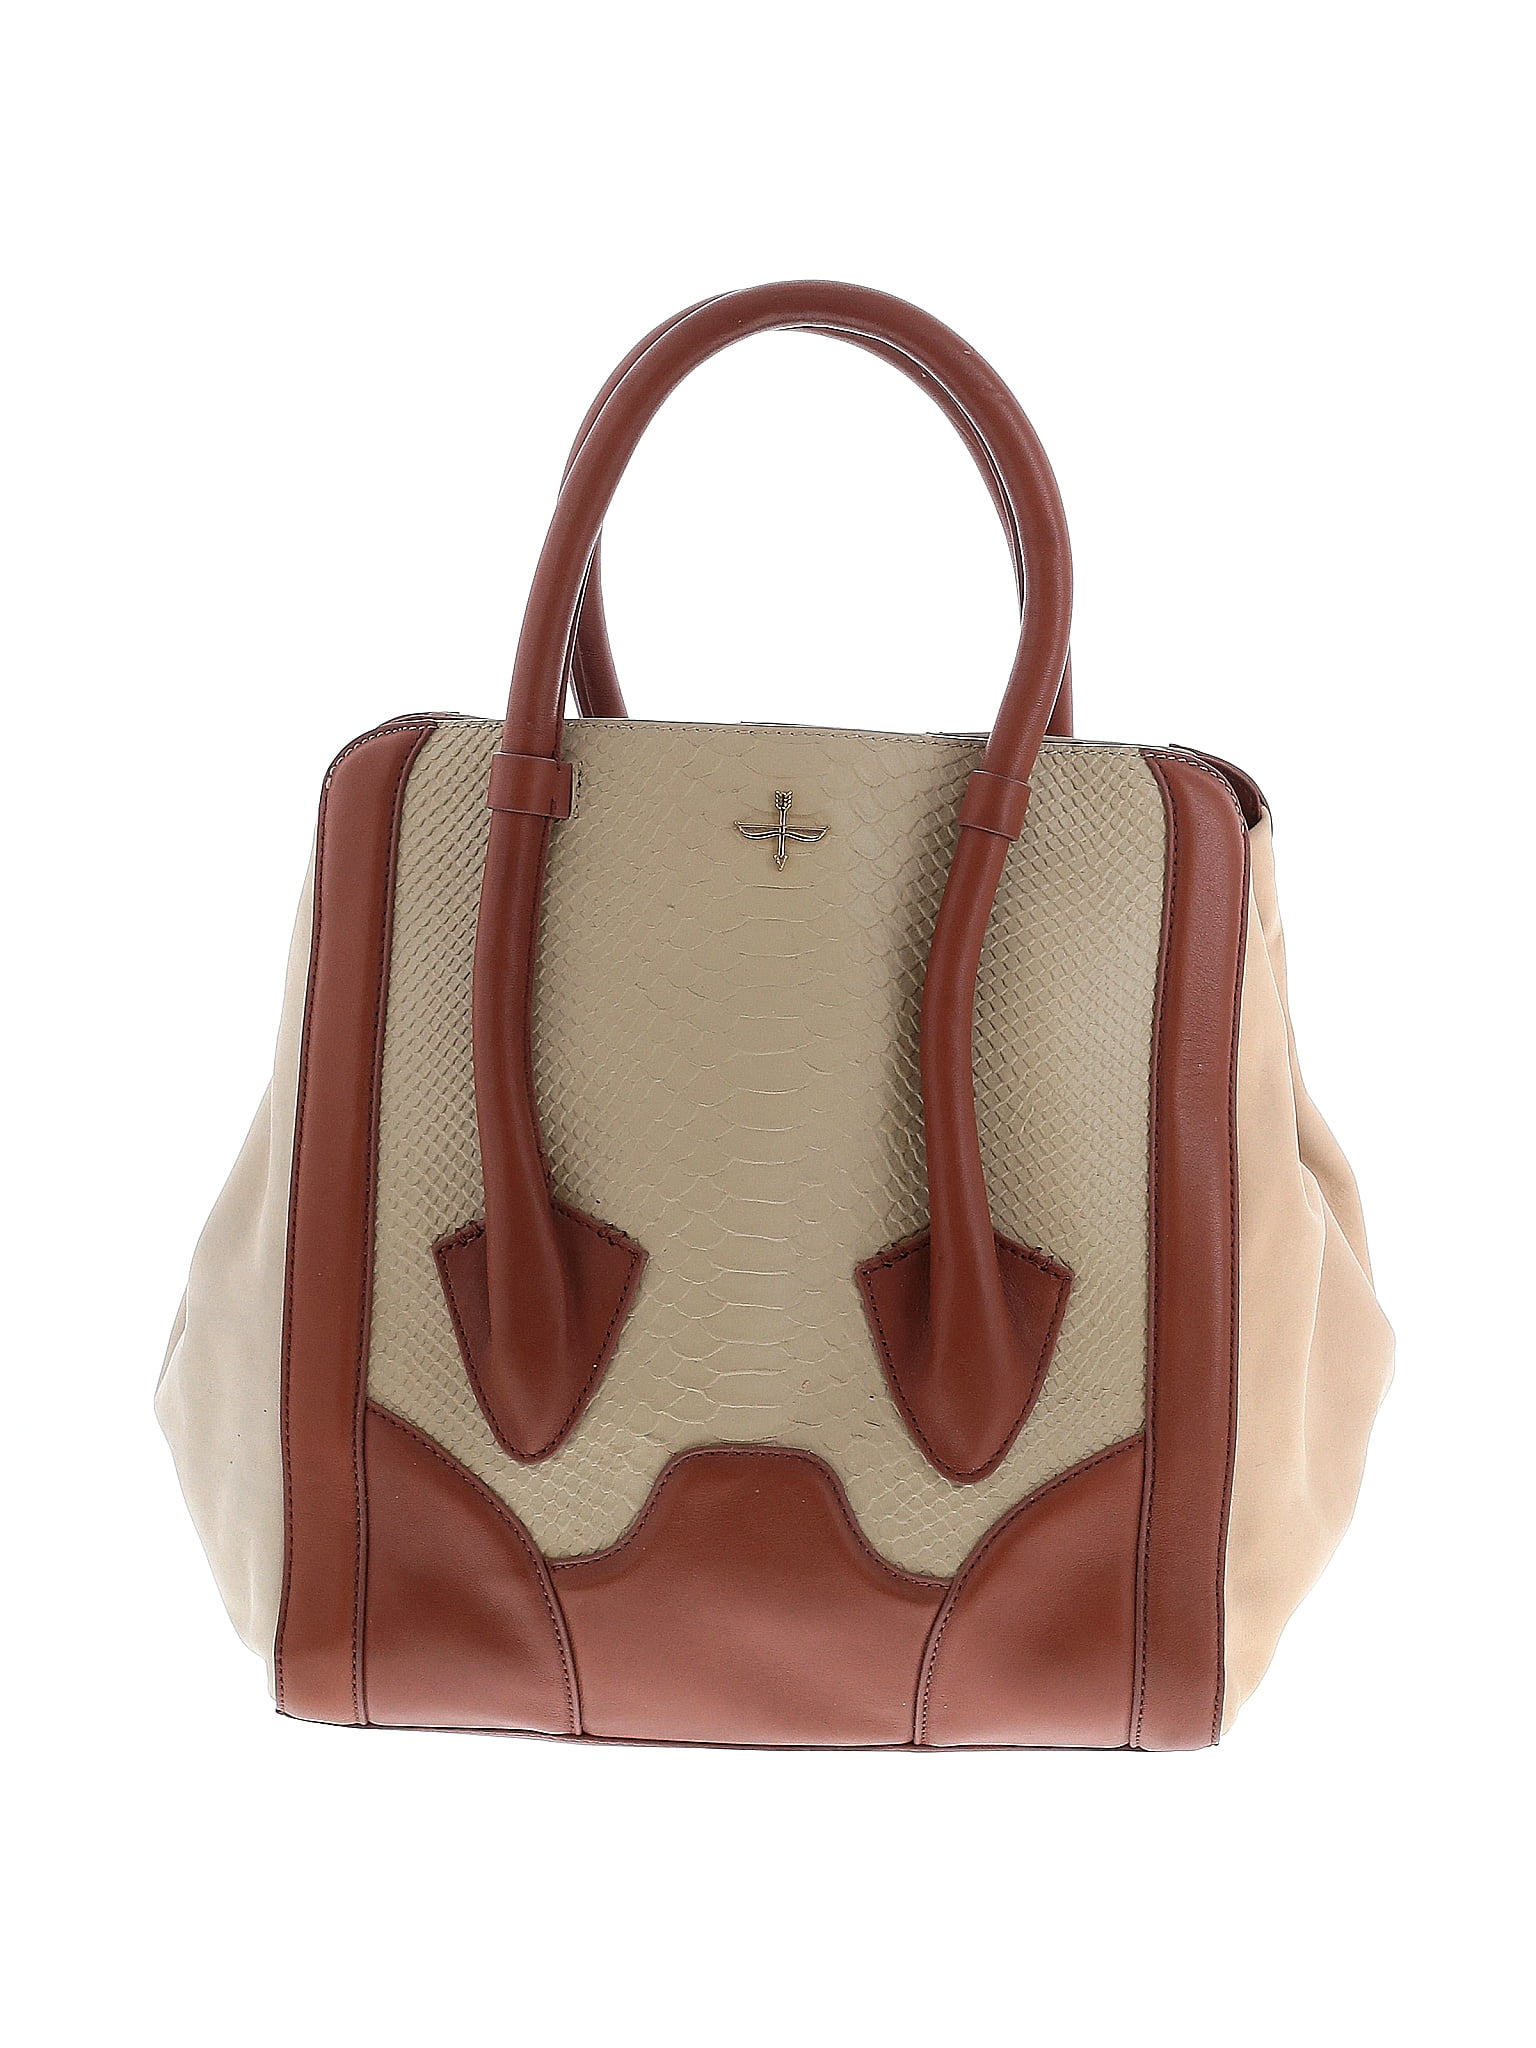 Pour la Victoire Leather Handbag Tote-Tan-Double Leather Straps-13.5 x  13.0”